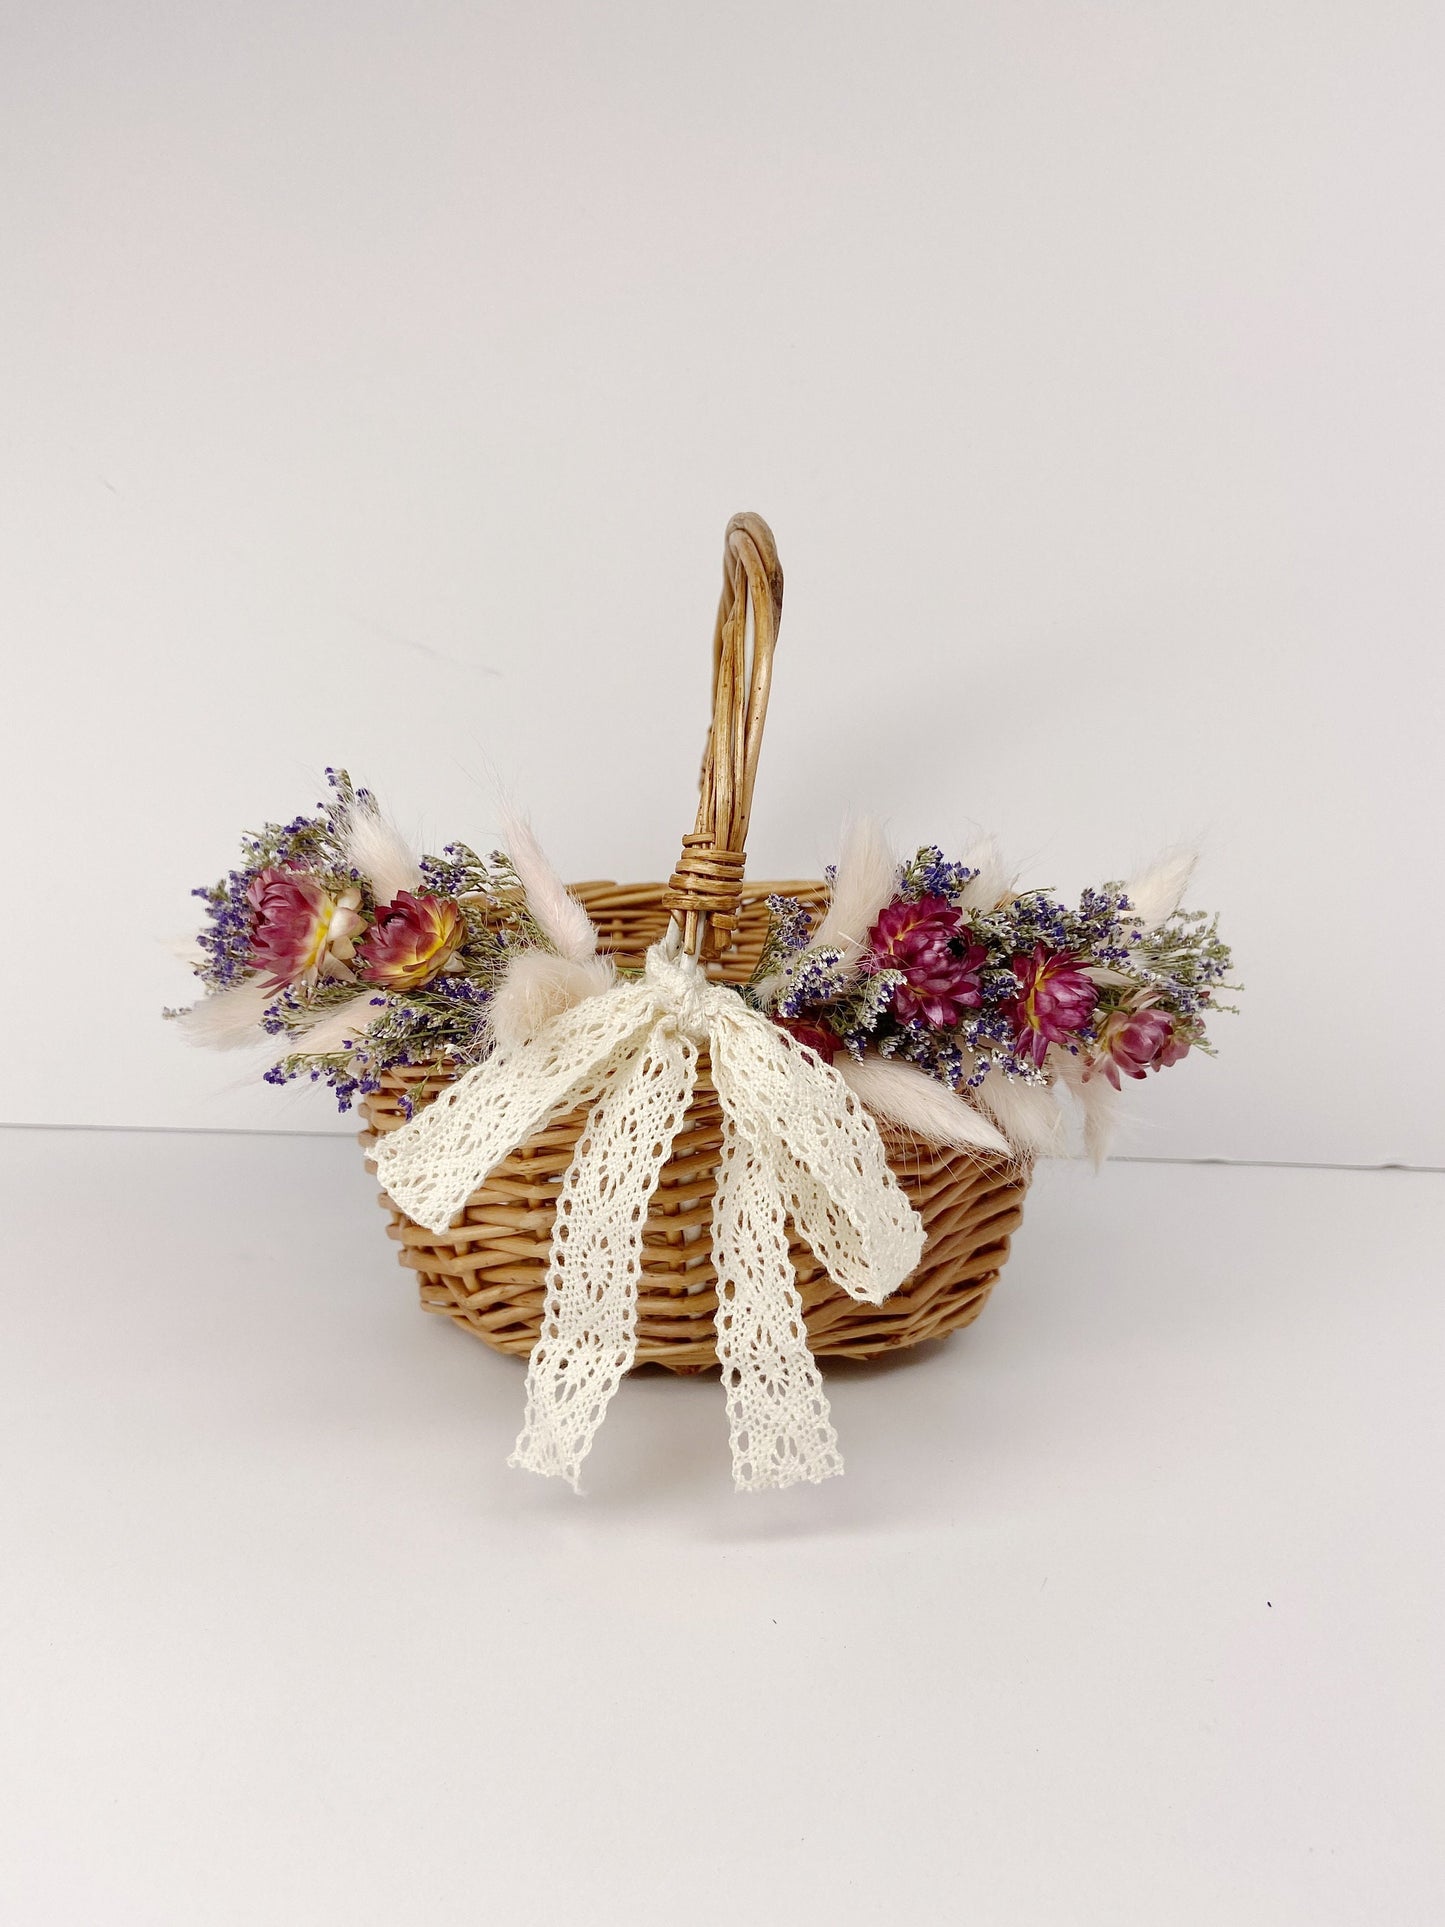 Flower Girl Basket, Wedding Basket, Wooden, Rose Petals, Dried Flowers, Preserved, Aisle Runner, Decorated Basket, Details, Floral, Bridal